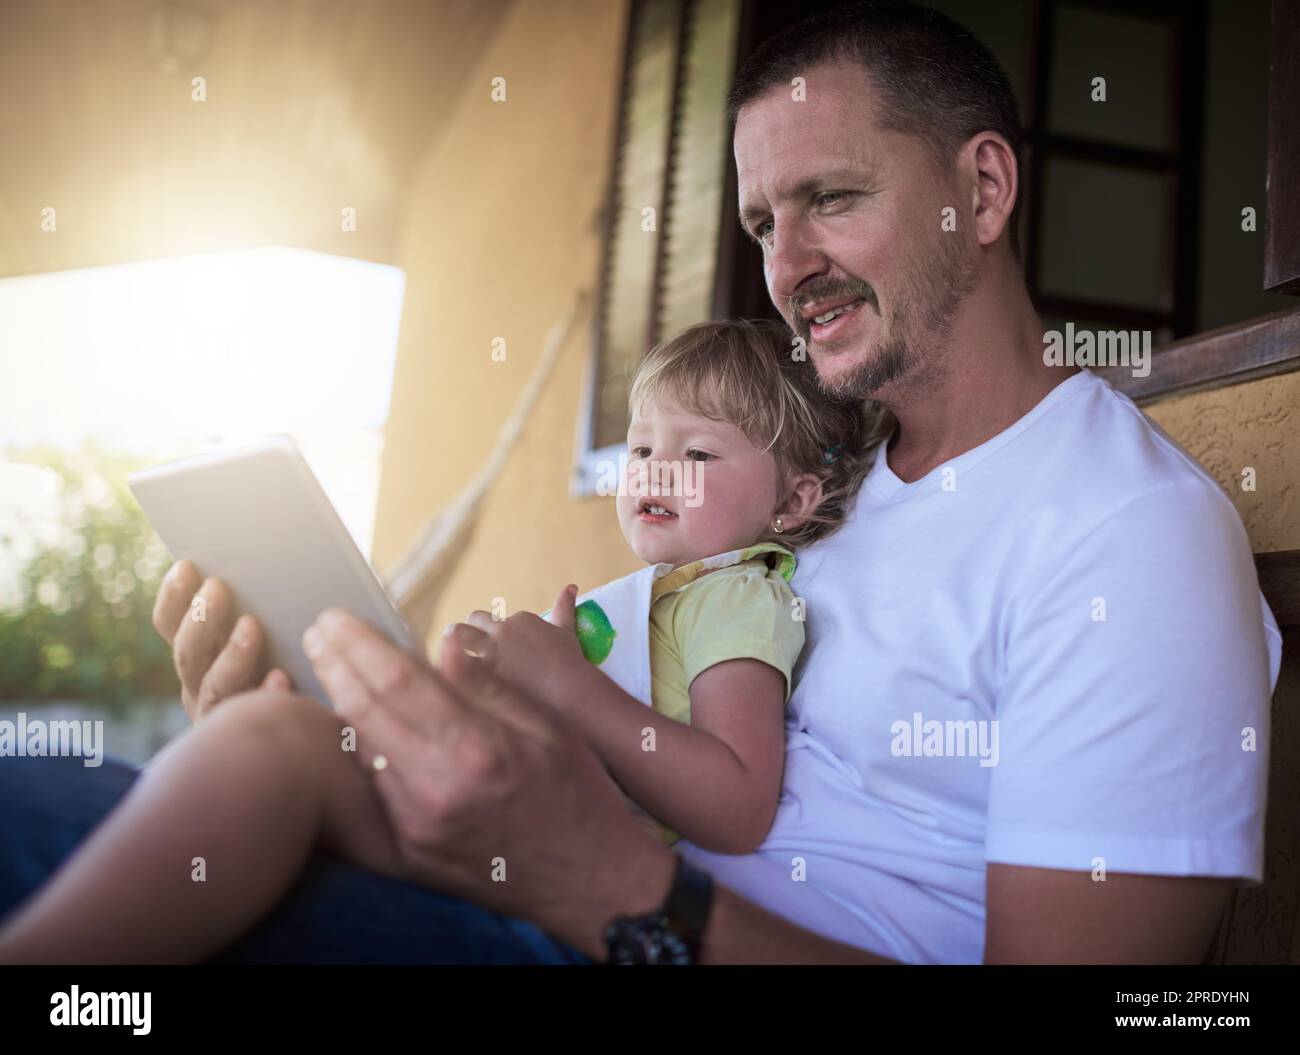 Dandole un assaggio del meraviglioso mondo online. Un padre e sua figlia usano un tablet digitale insieme all'esterno. Foto Stock